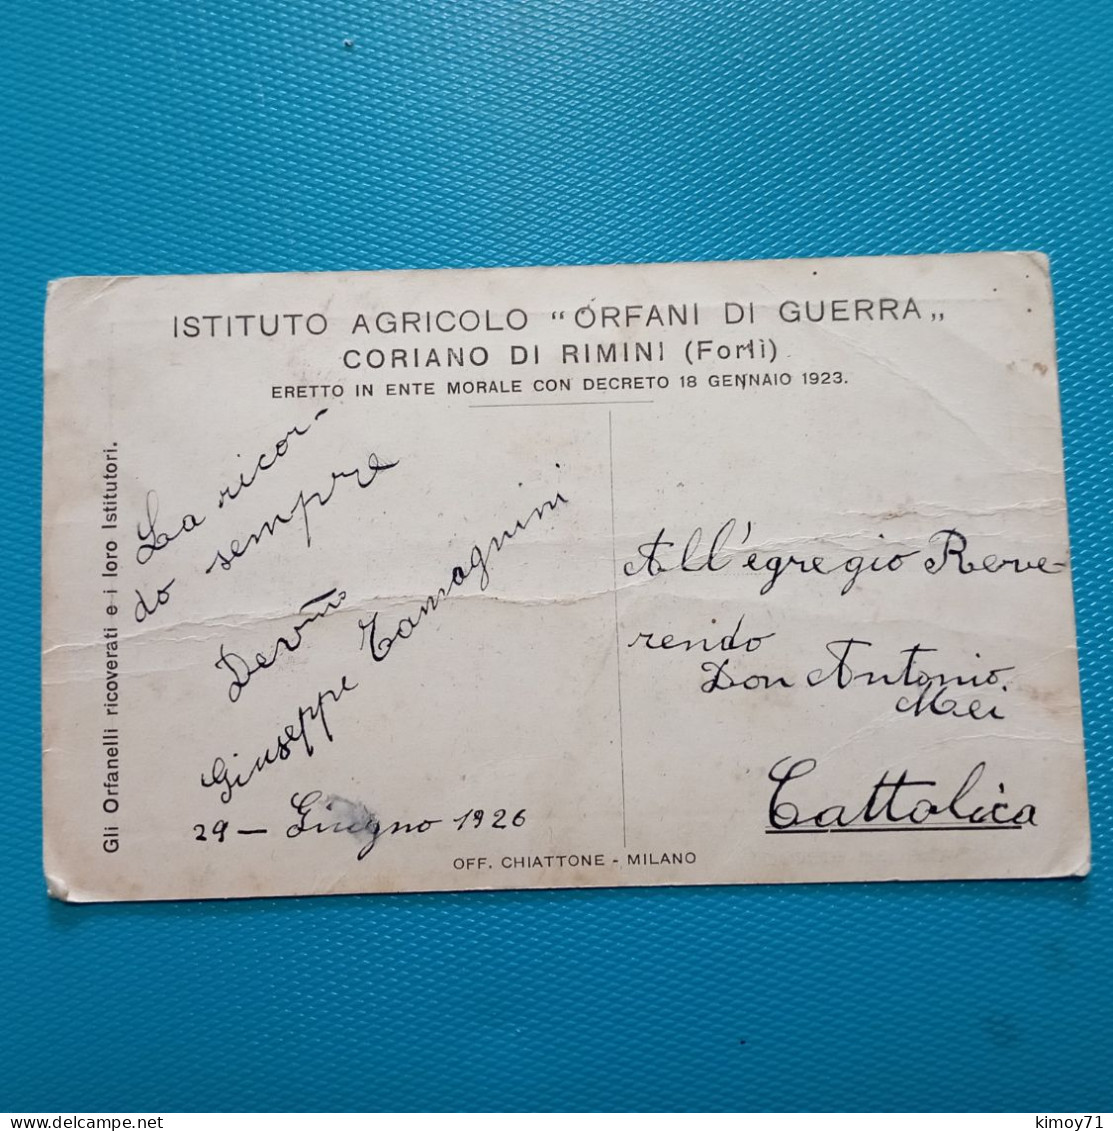 Cartolina Istituto Agricolo "Orfani Di Guerra" - Coriano Di Rimini (Forlì). Viaggiata 1926 - Rimini